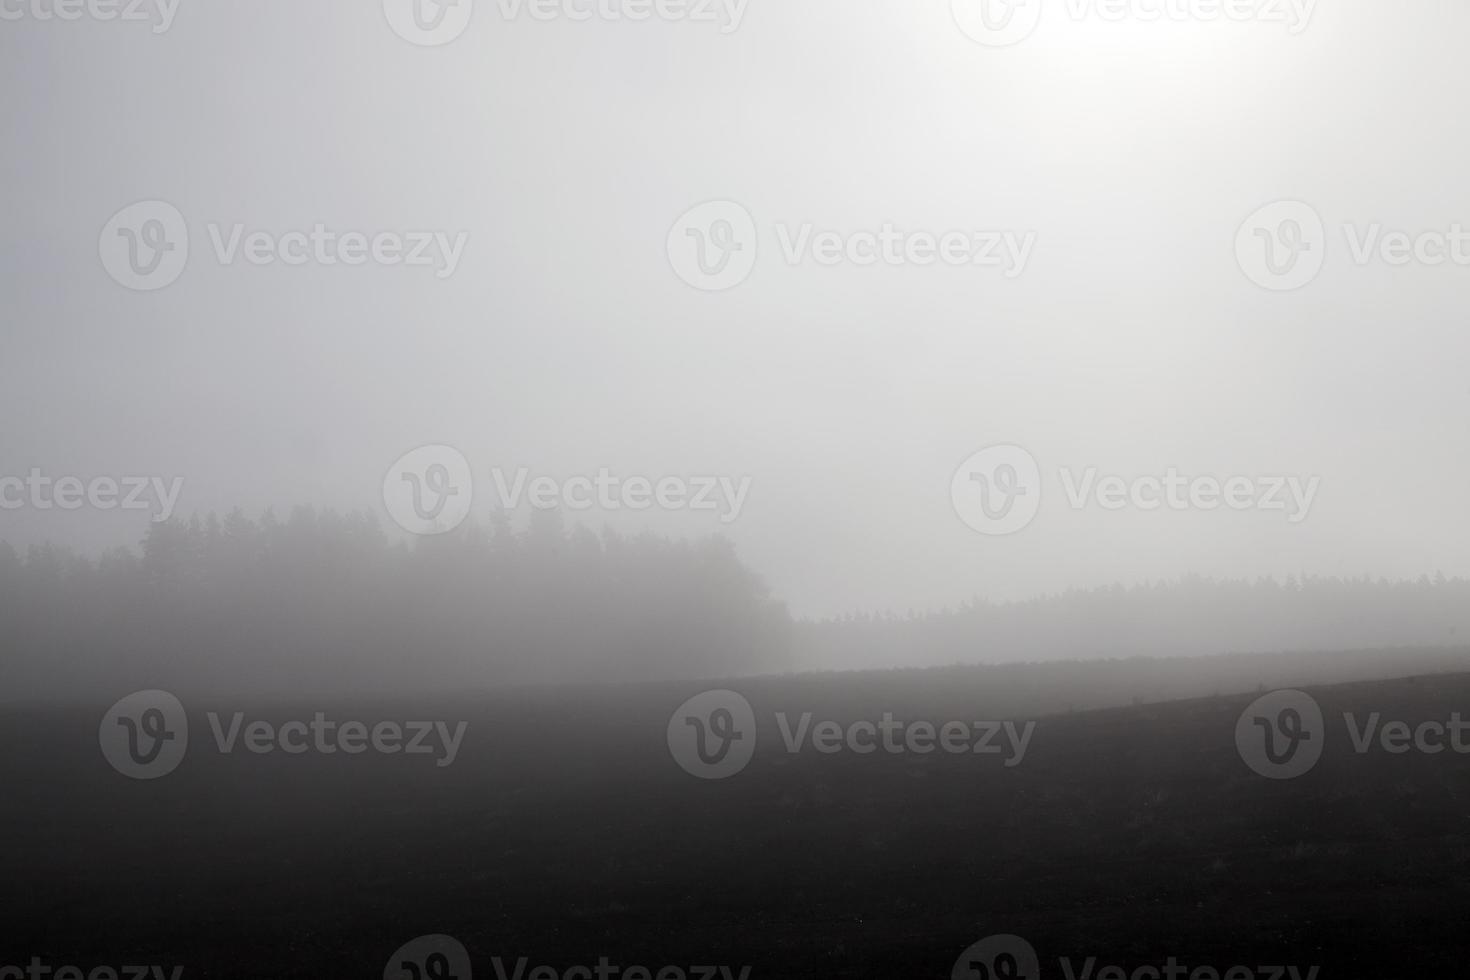 nebbia nella stagione autunnale foto